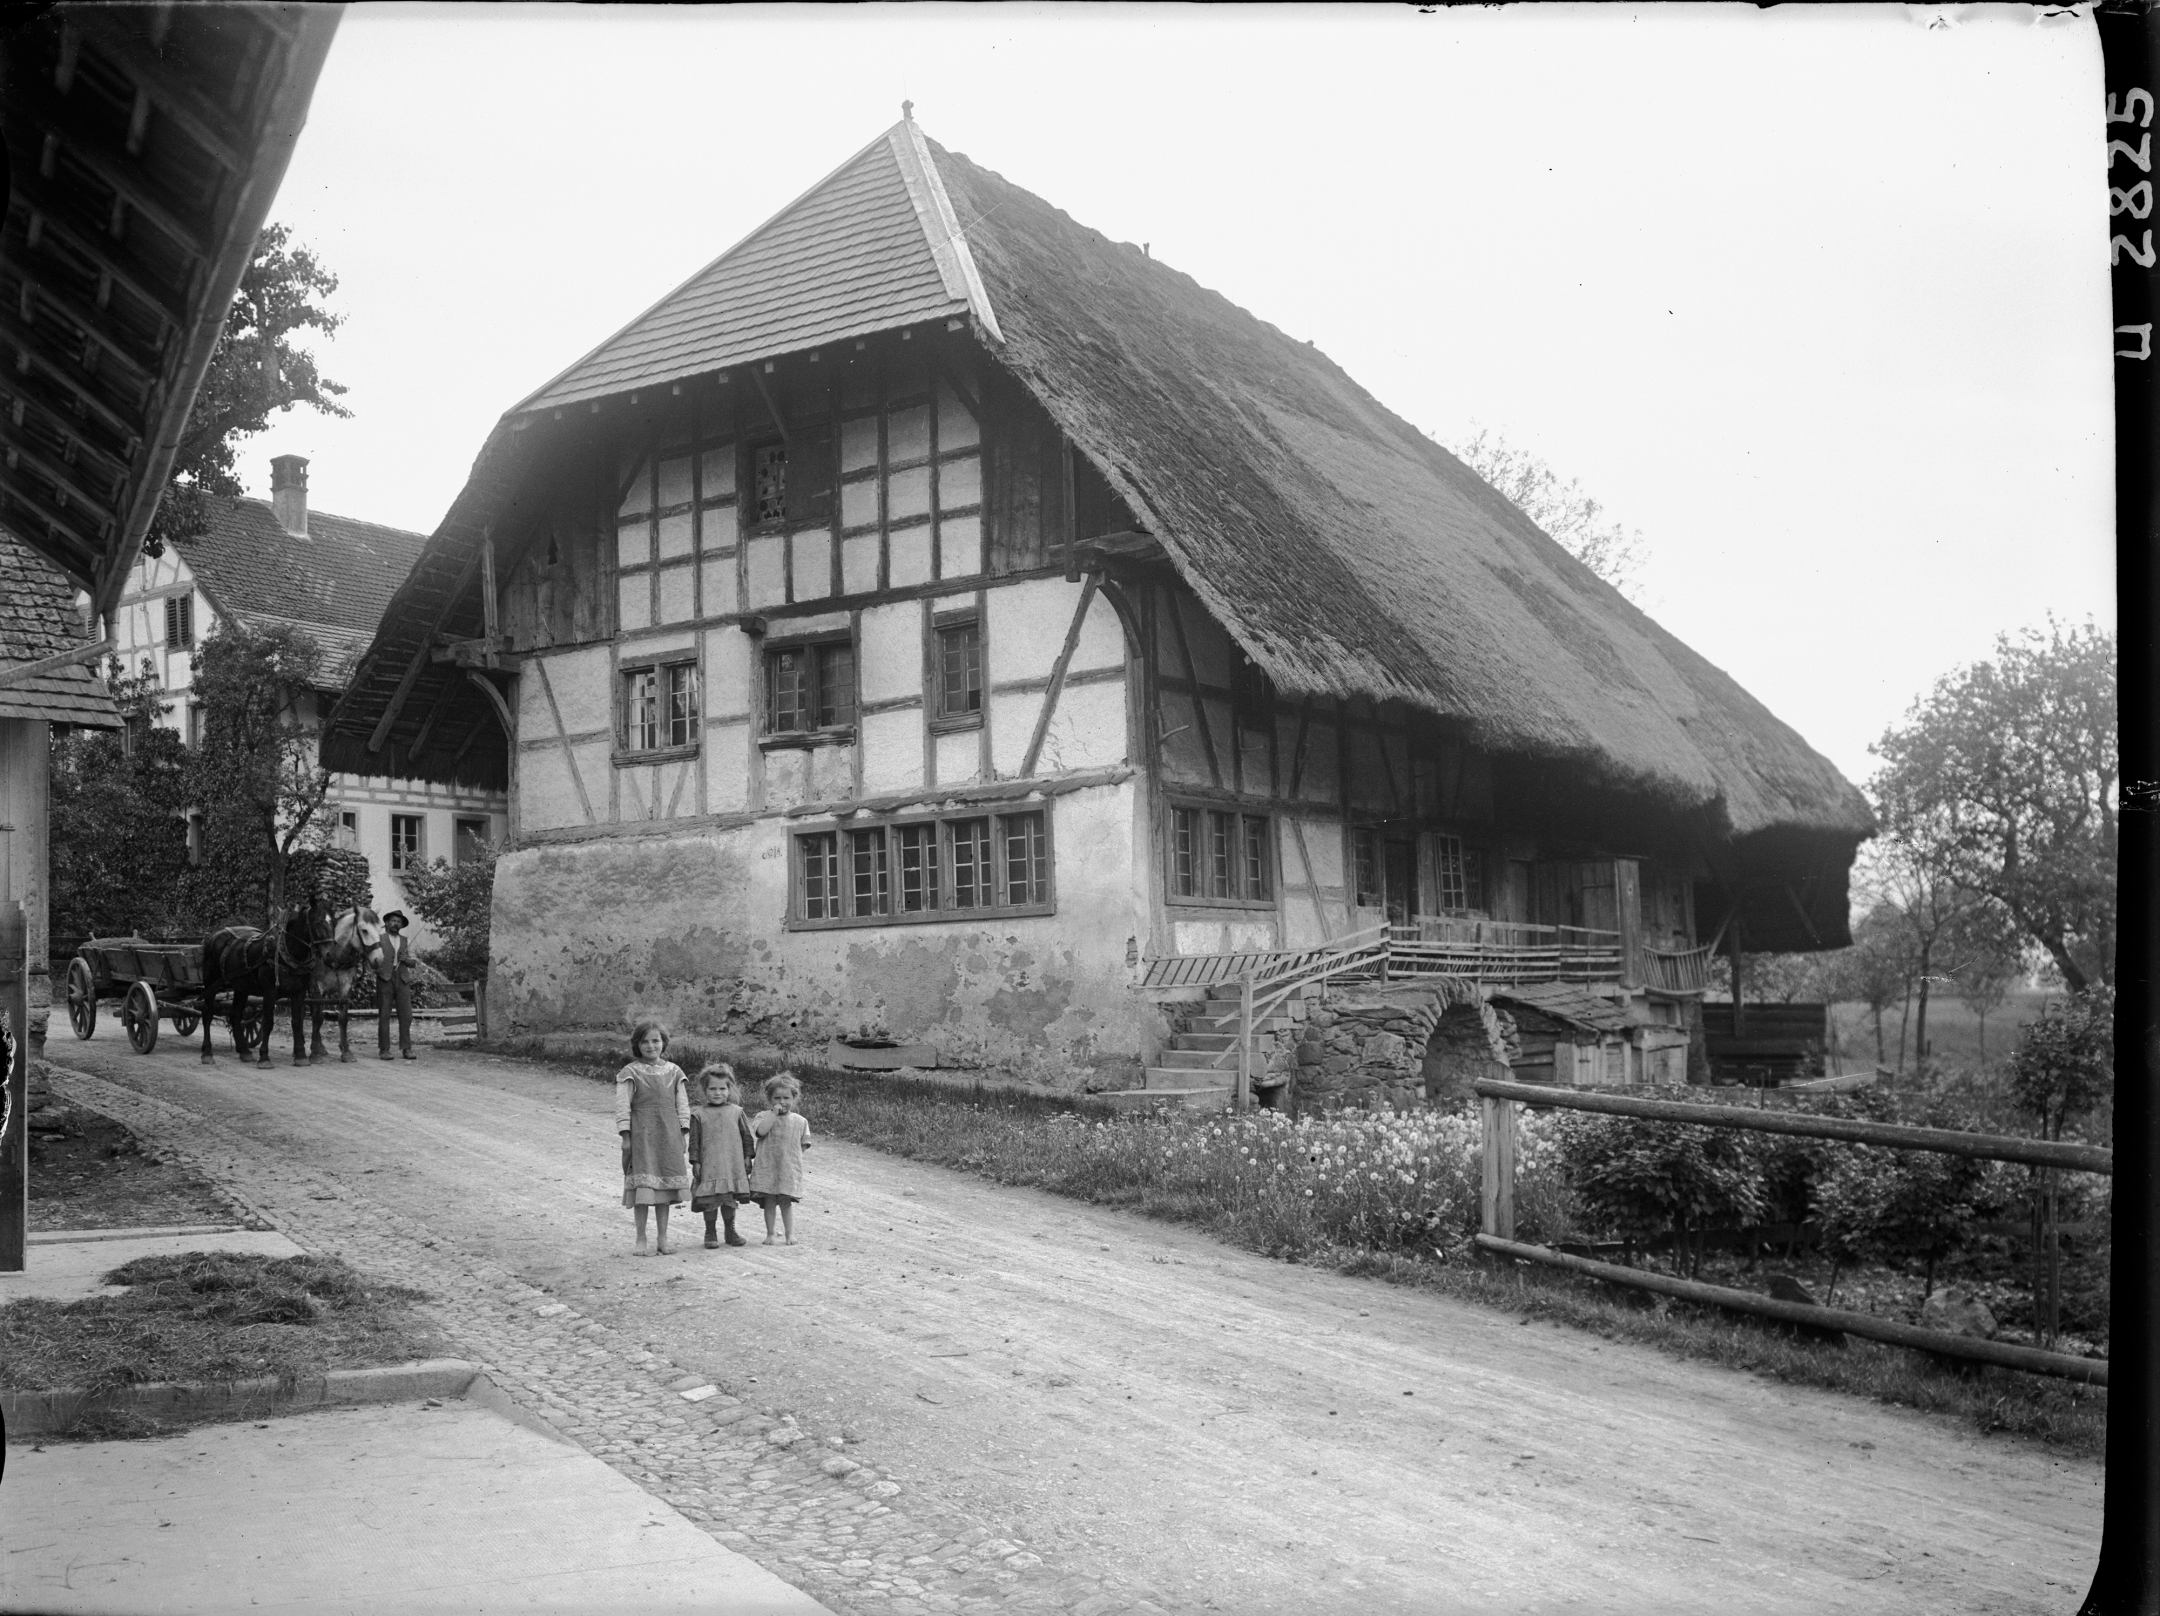 Strohdachhaus Hüttikon 1929 an der Oetwilerstrasse 12 in Hüttikon mit einer Ziegeldeckung am Gerschild.